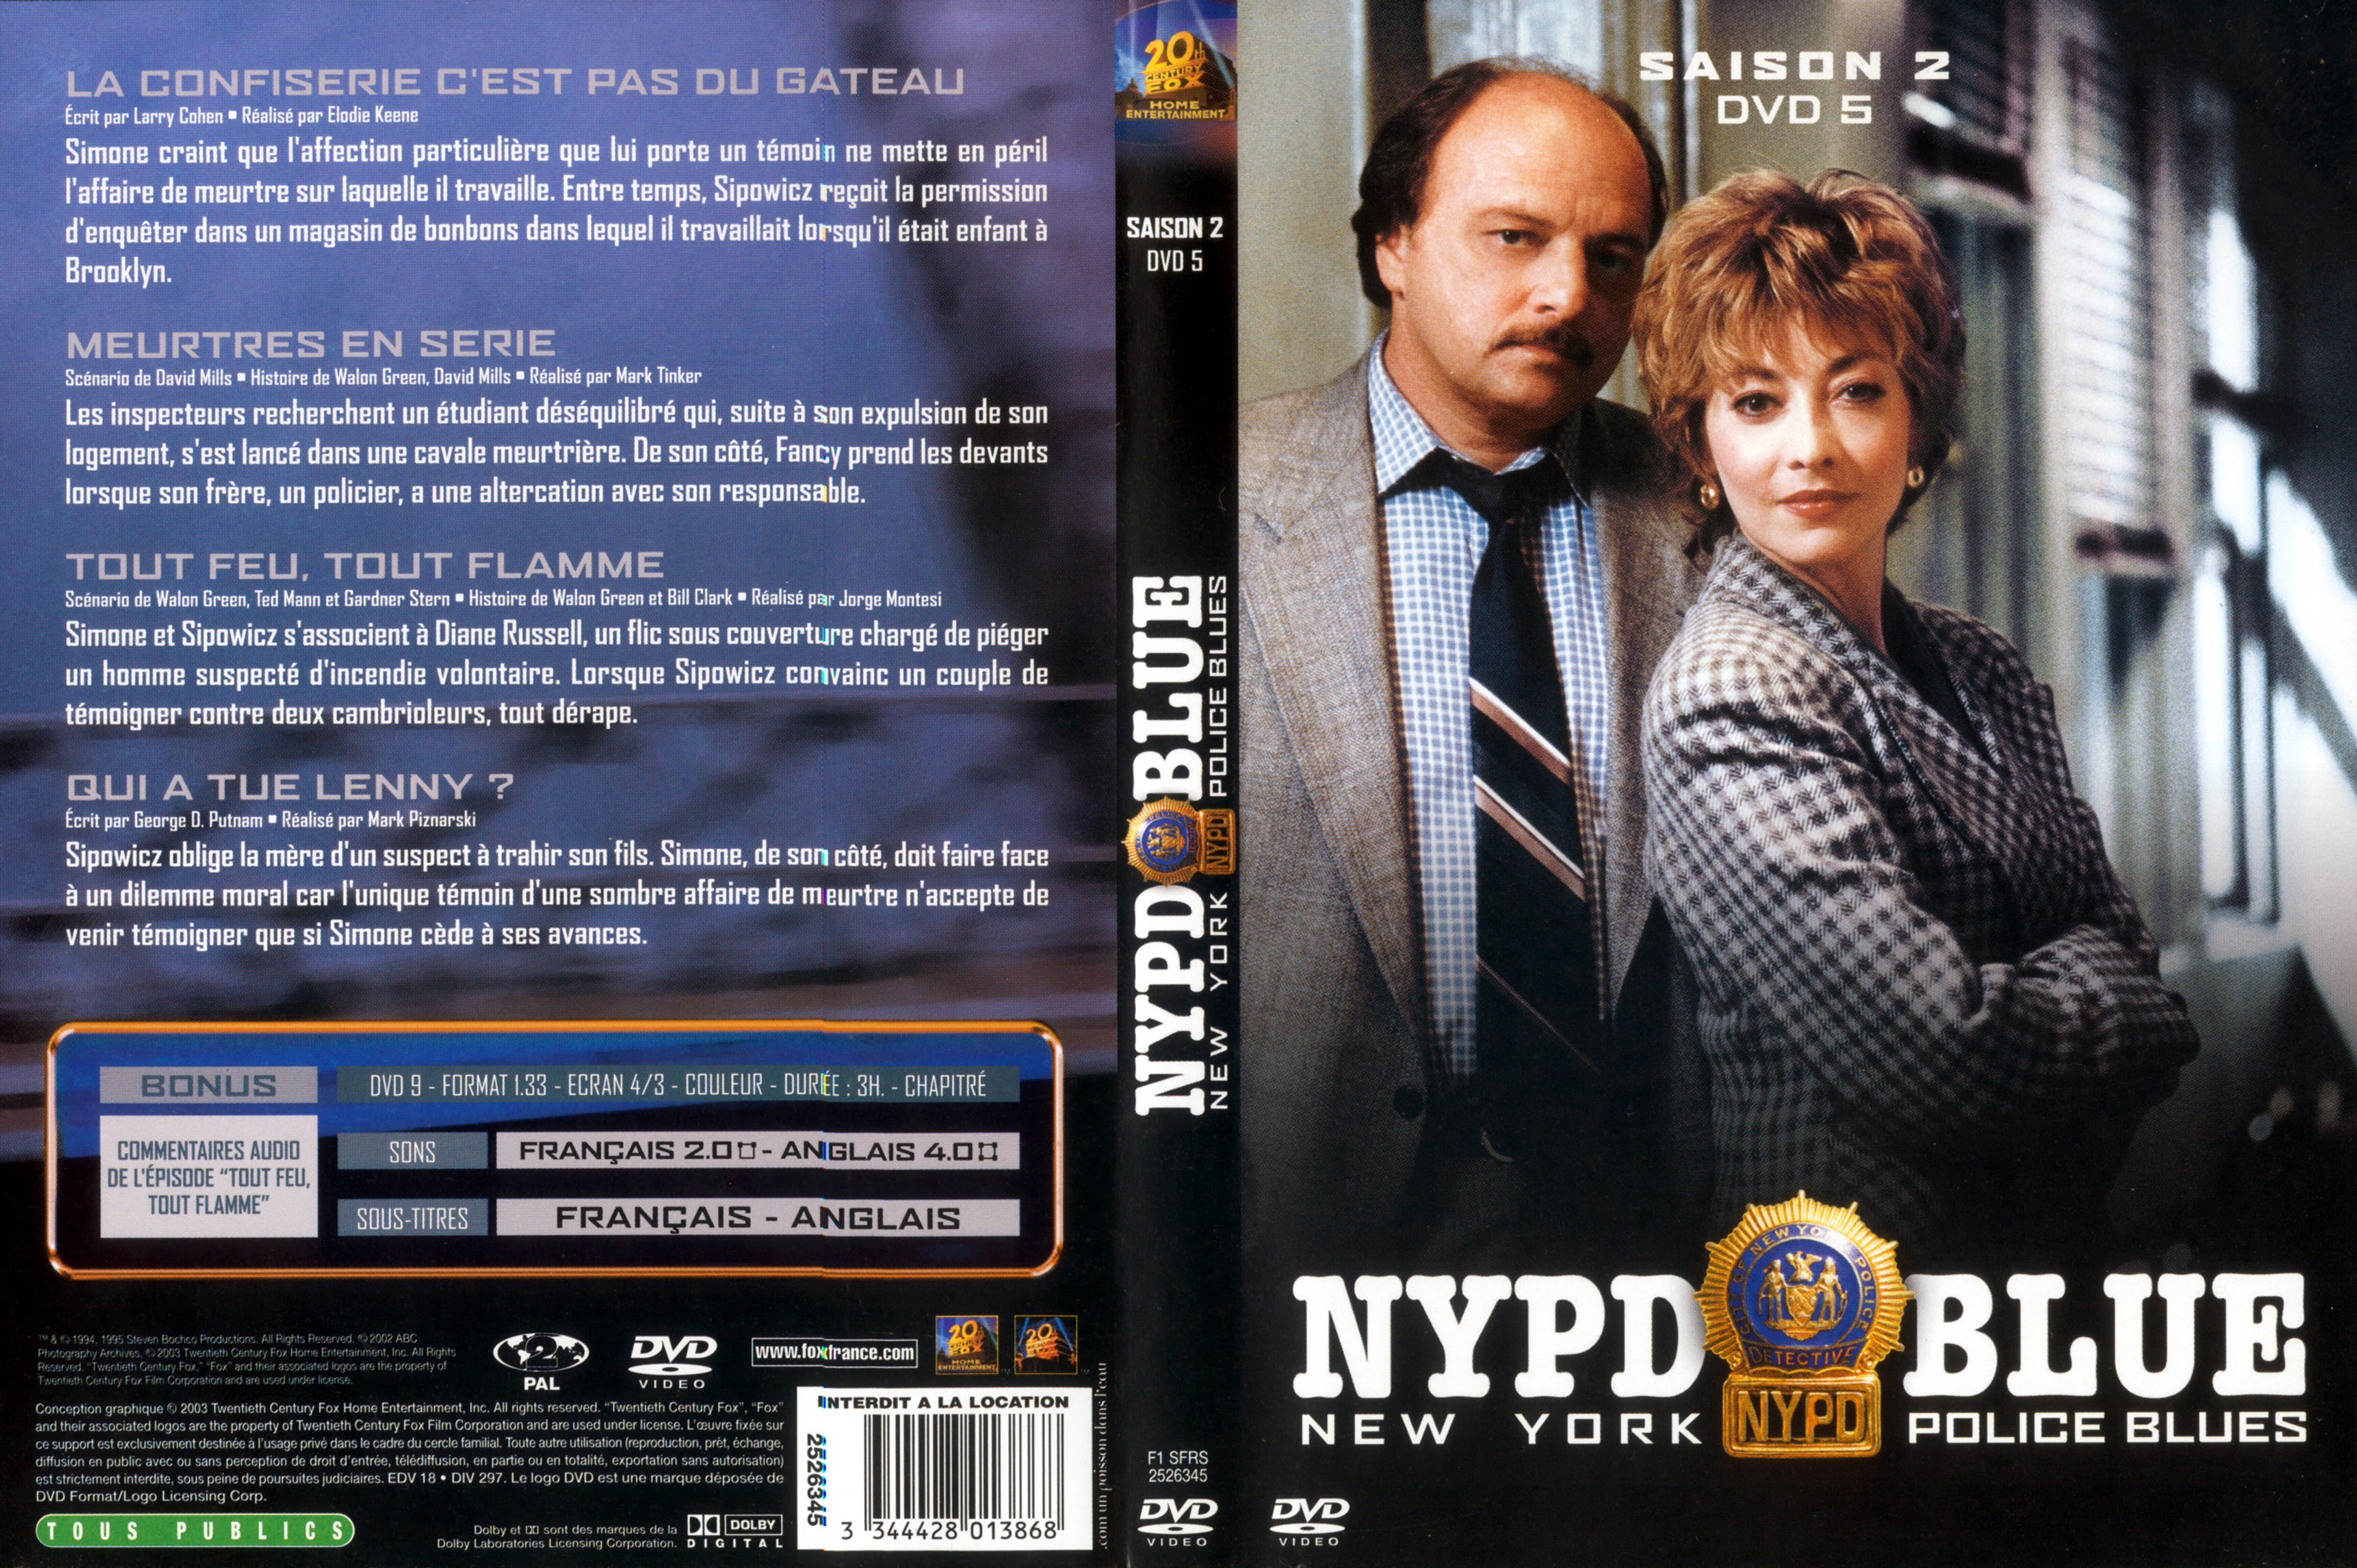 Jaquette DVD NYPD Blue saison 02 dvd 05